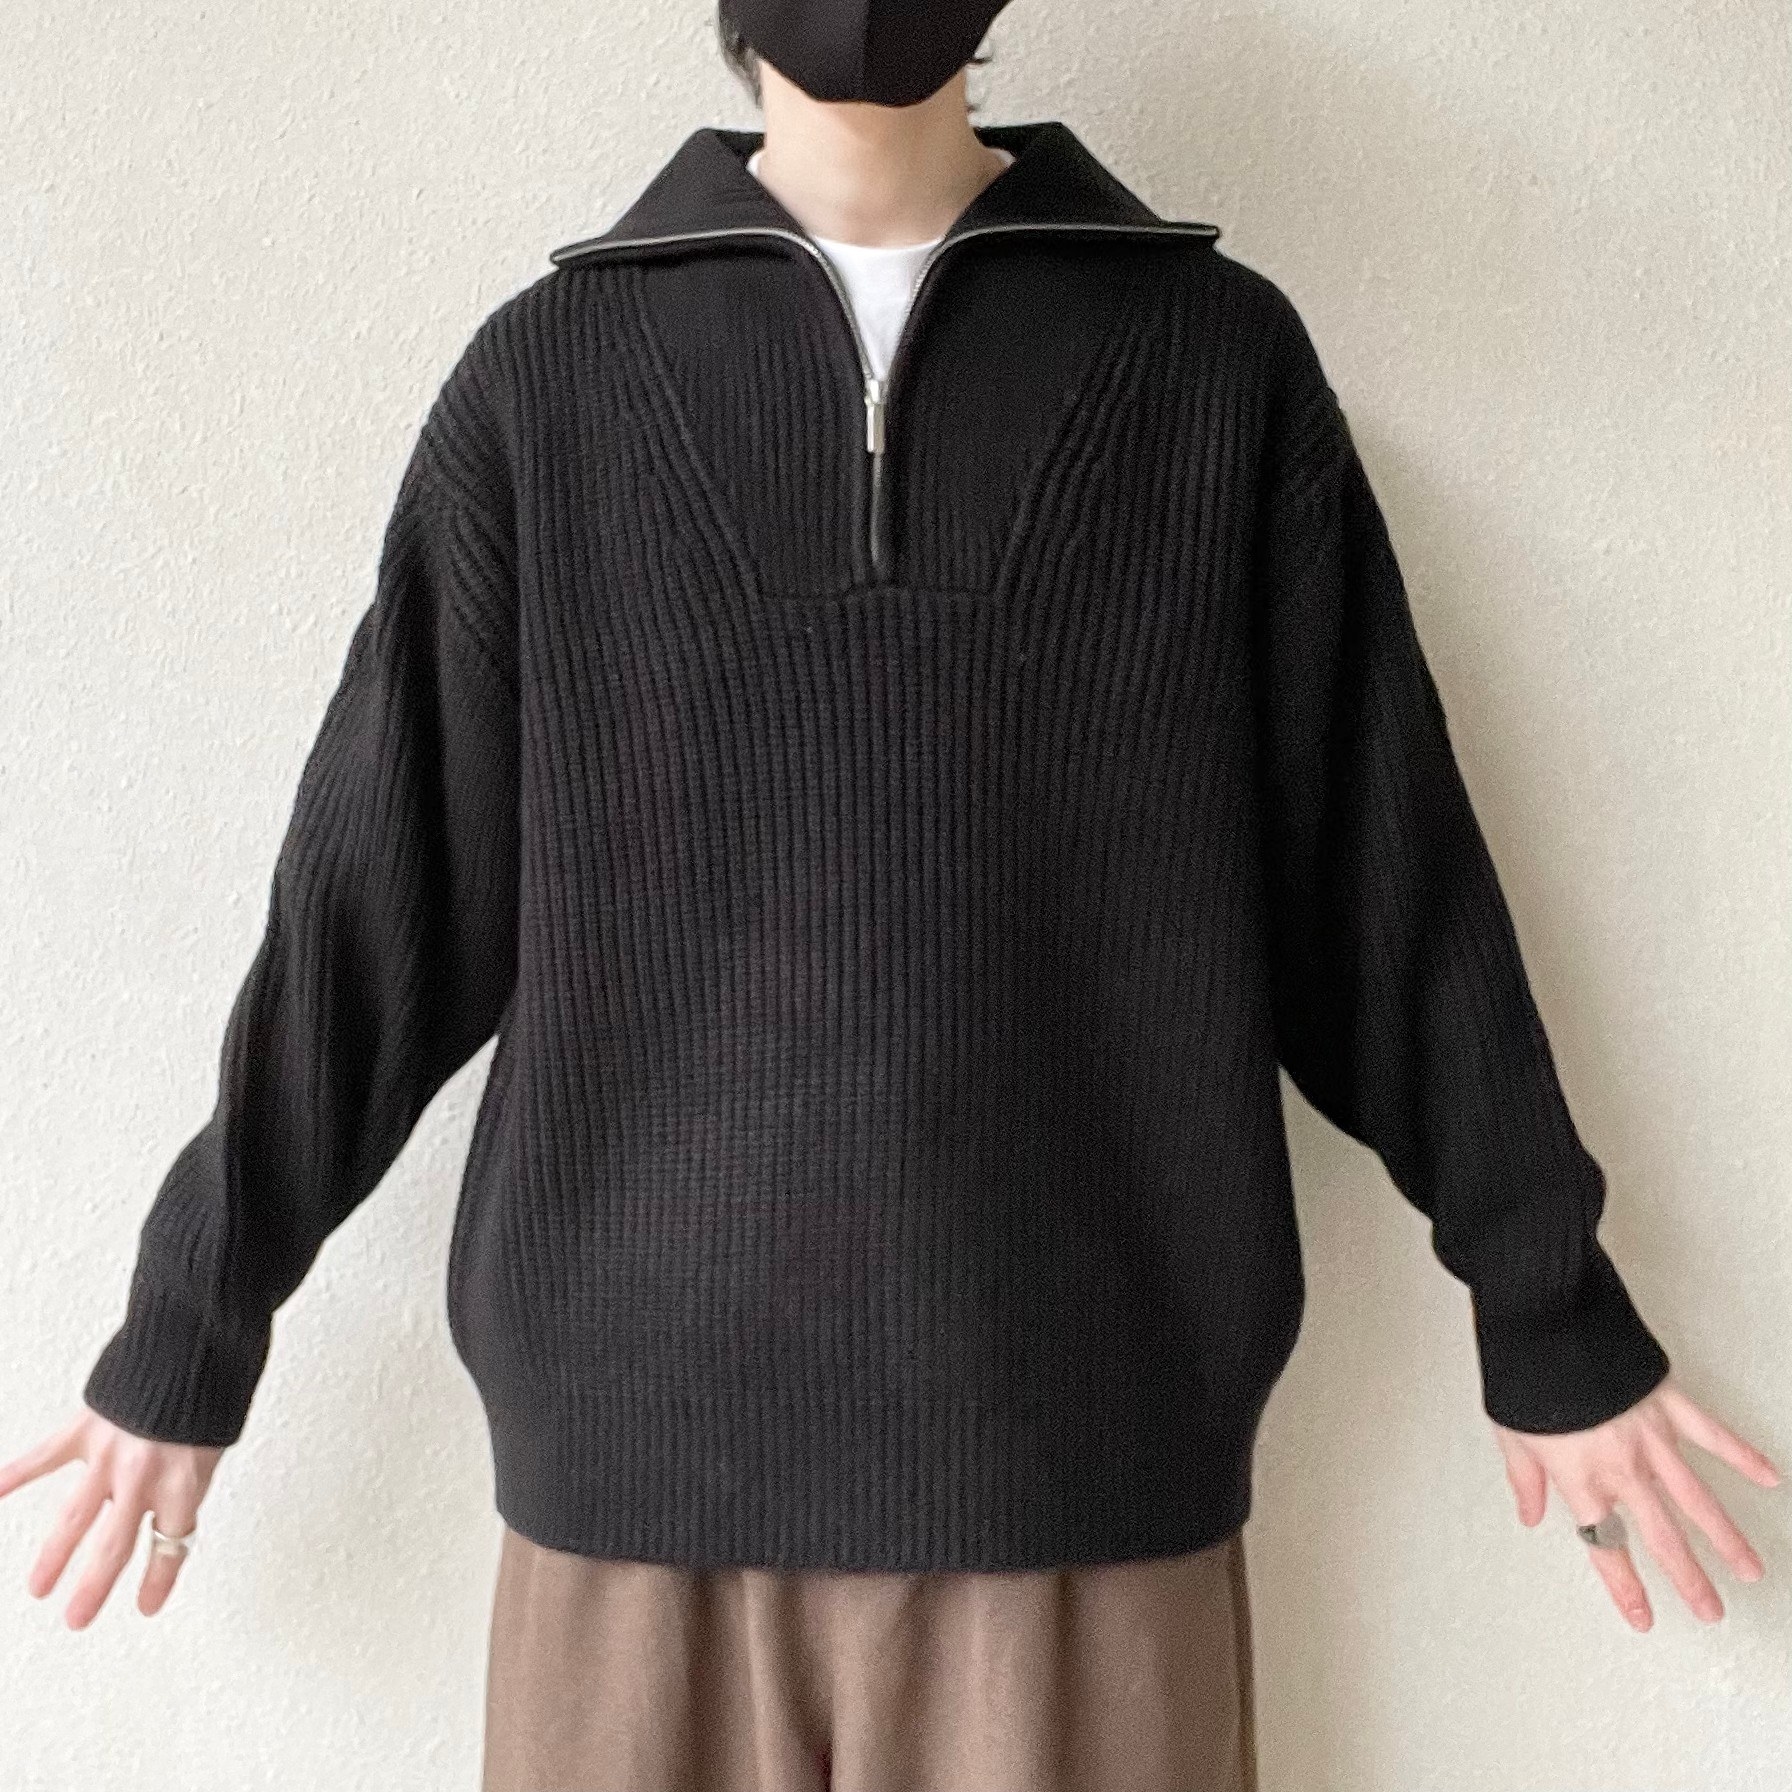 GU（ジーユー）のおすすめのメンズアイテム「ローゲージハーフジップセーター（長袖）NT+E」